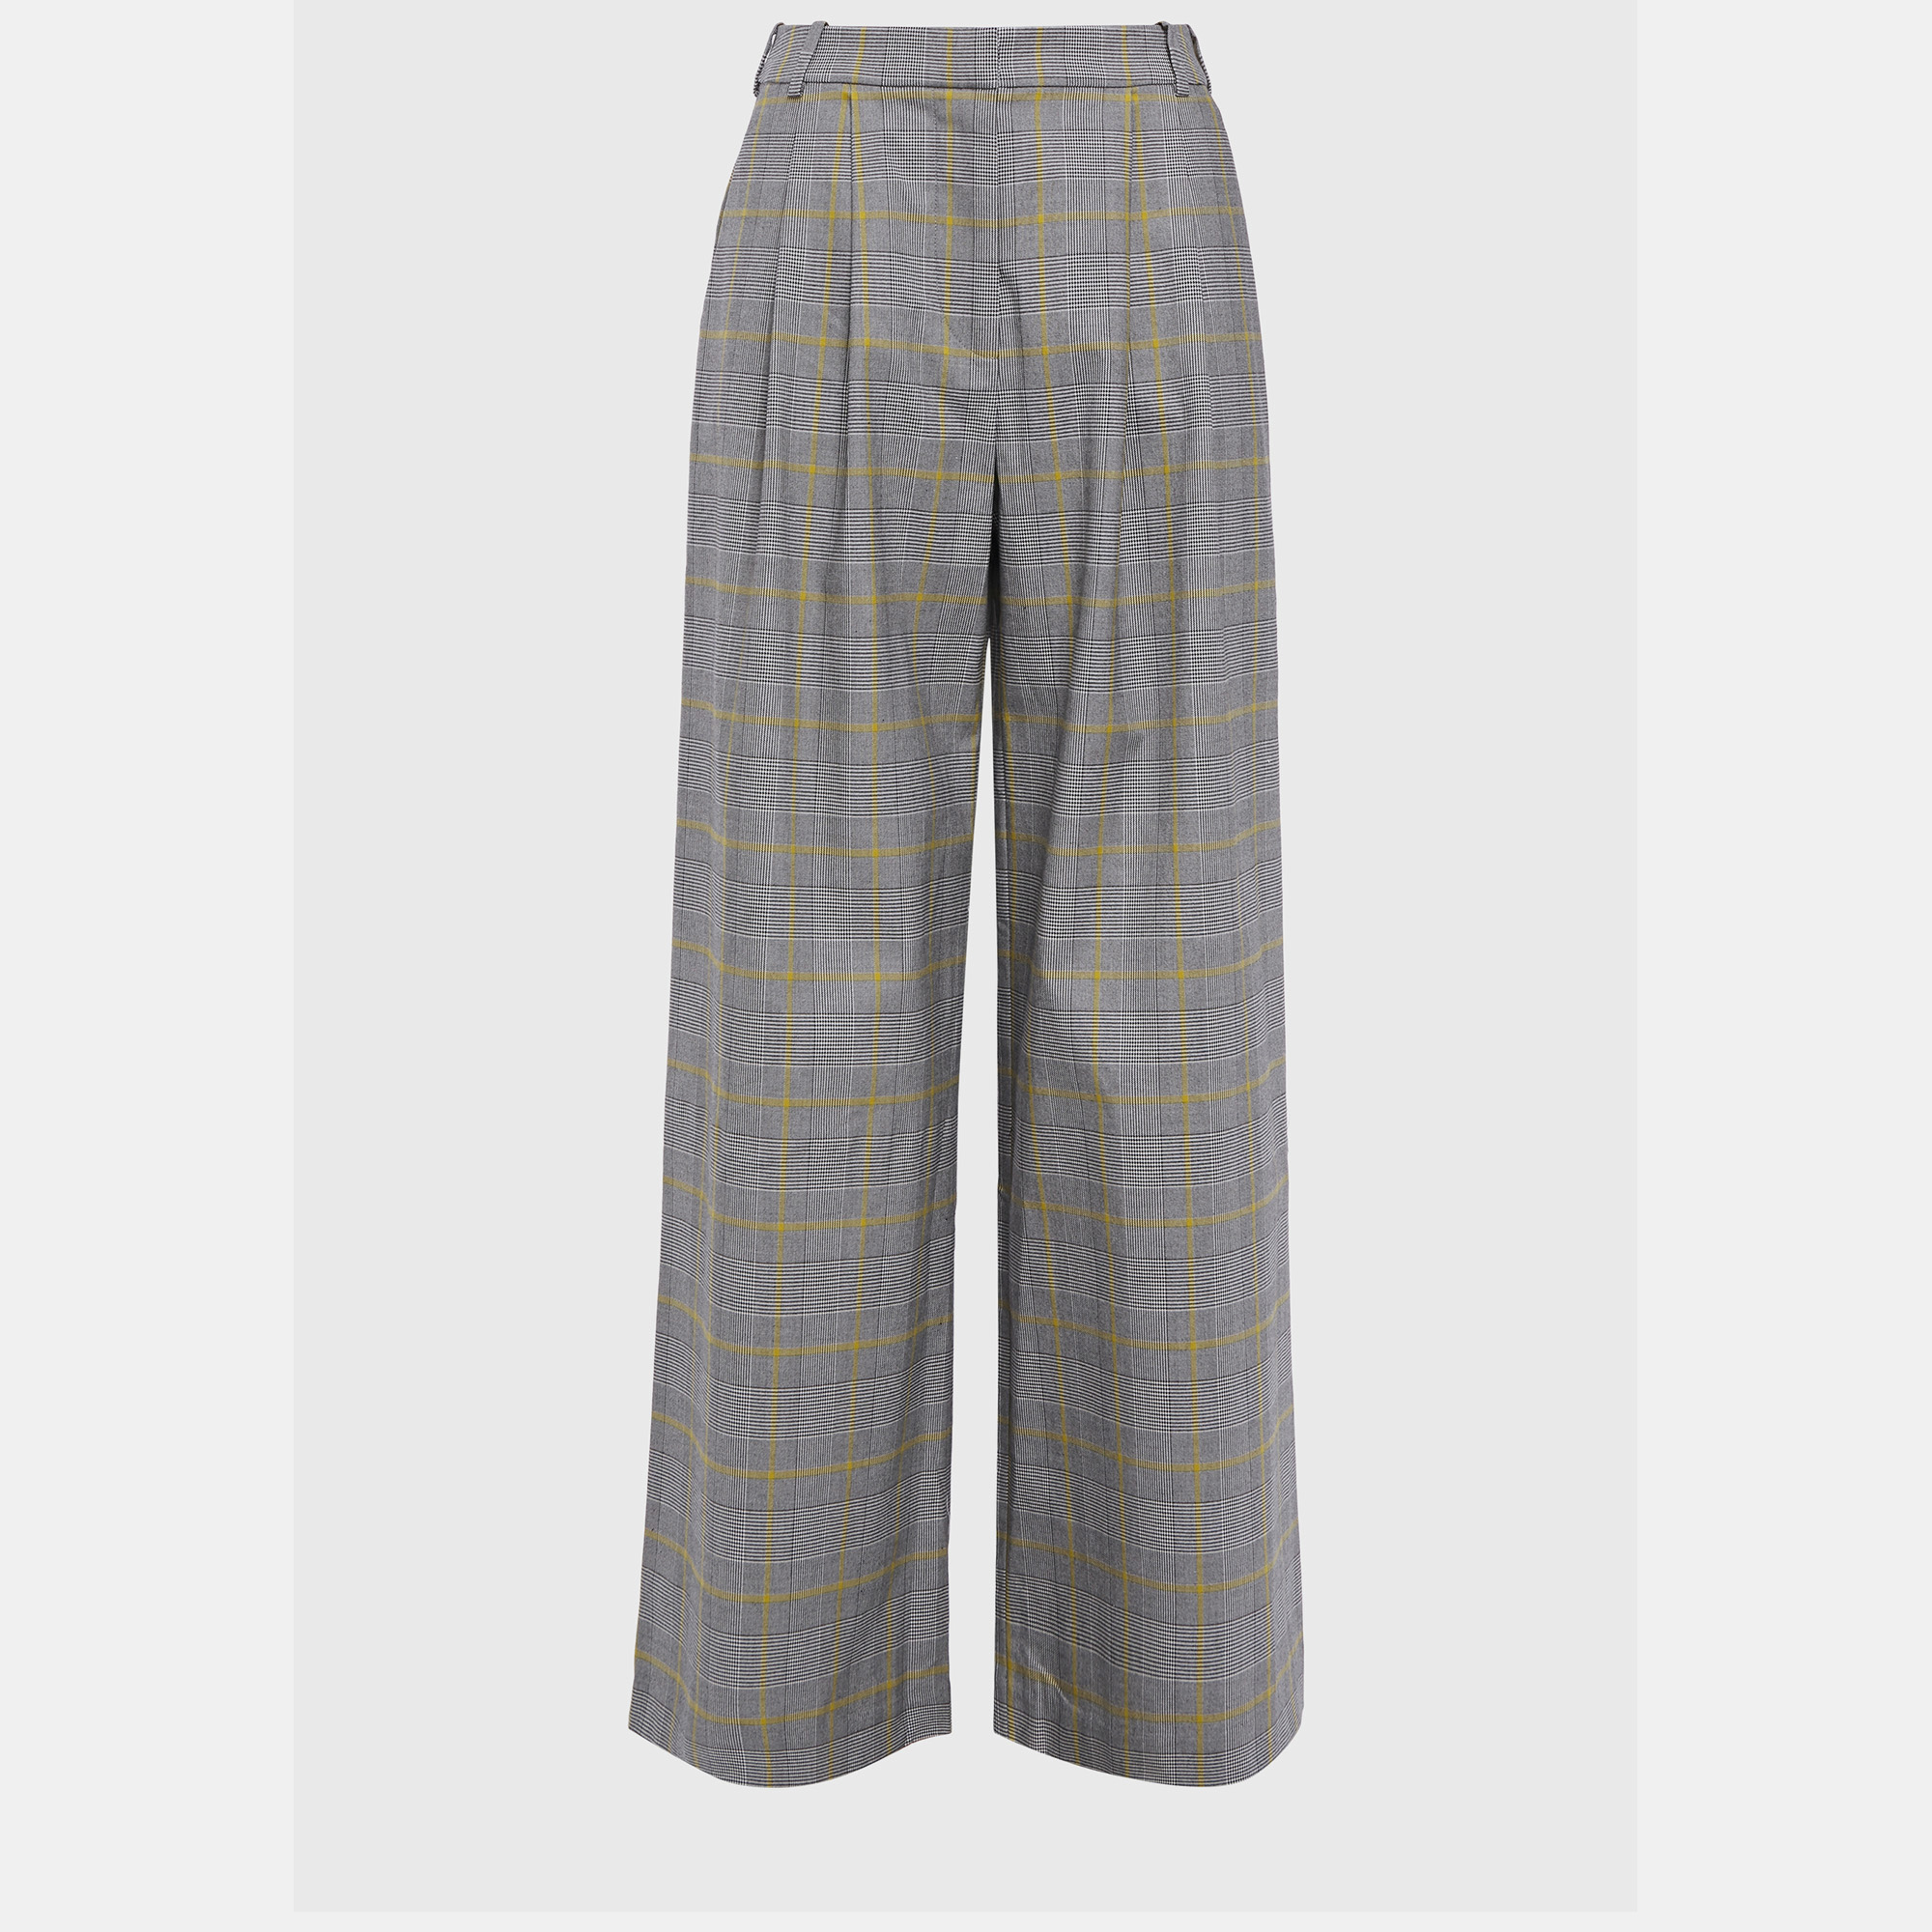 Zimmermann grey check cotton trousers size m (2)